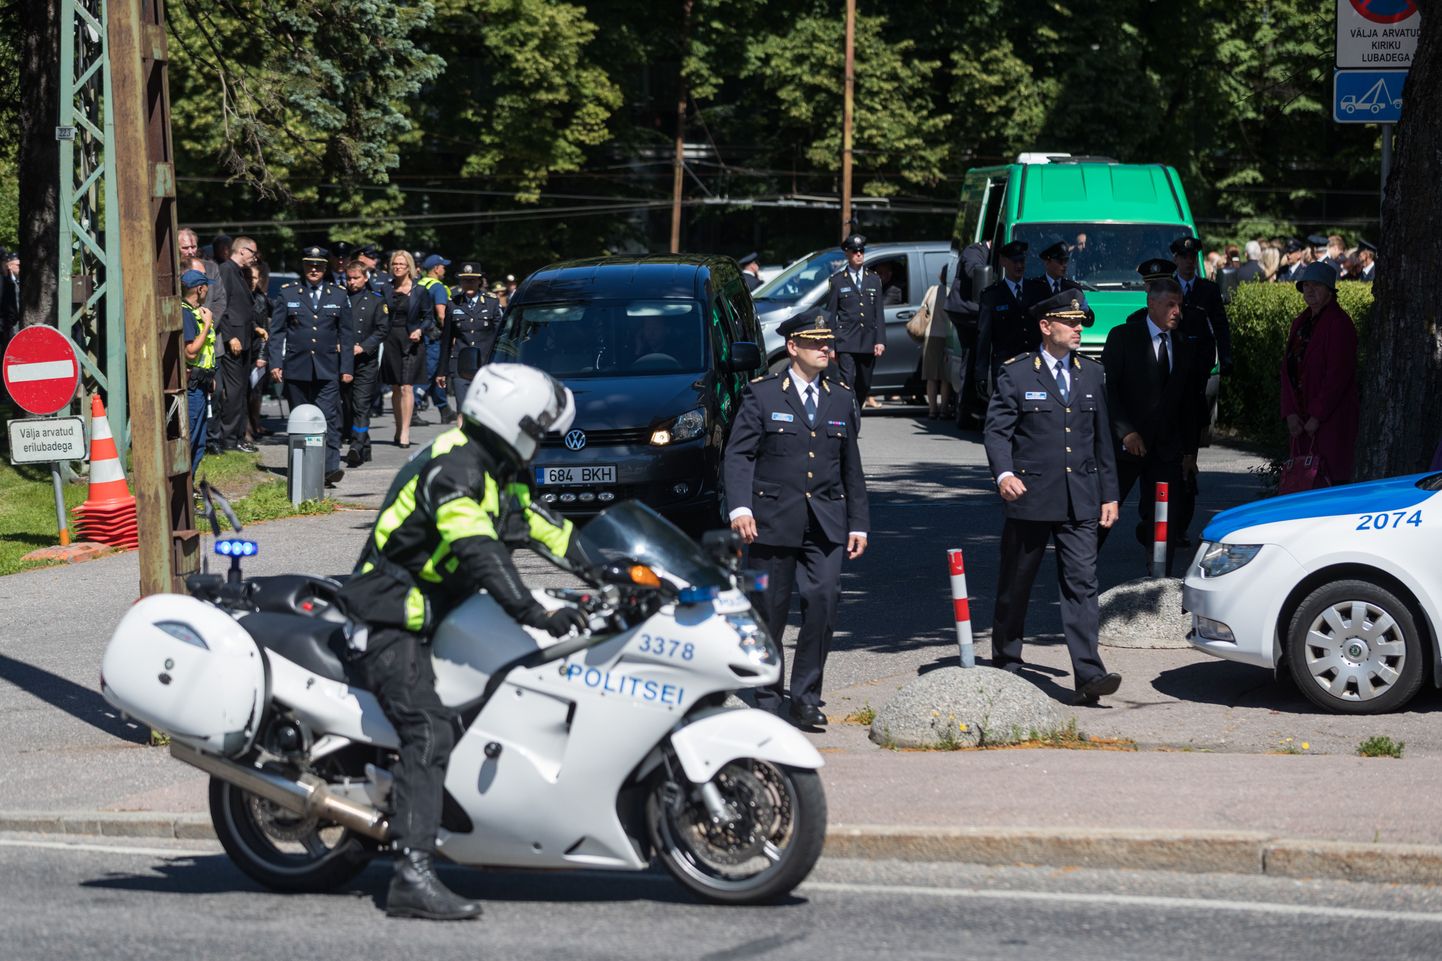 Sport Touring tüüpi mootorrattaid lisandub peagi politseile juurde